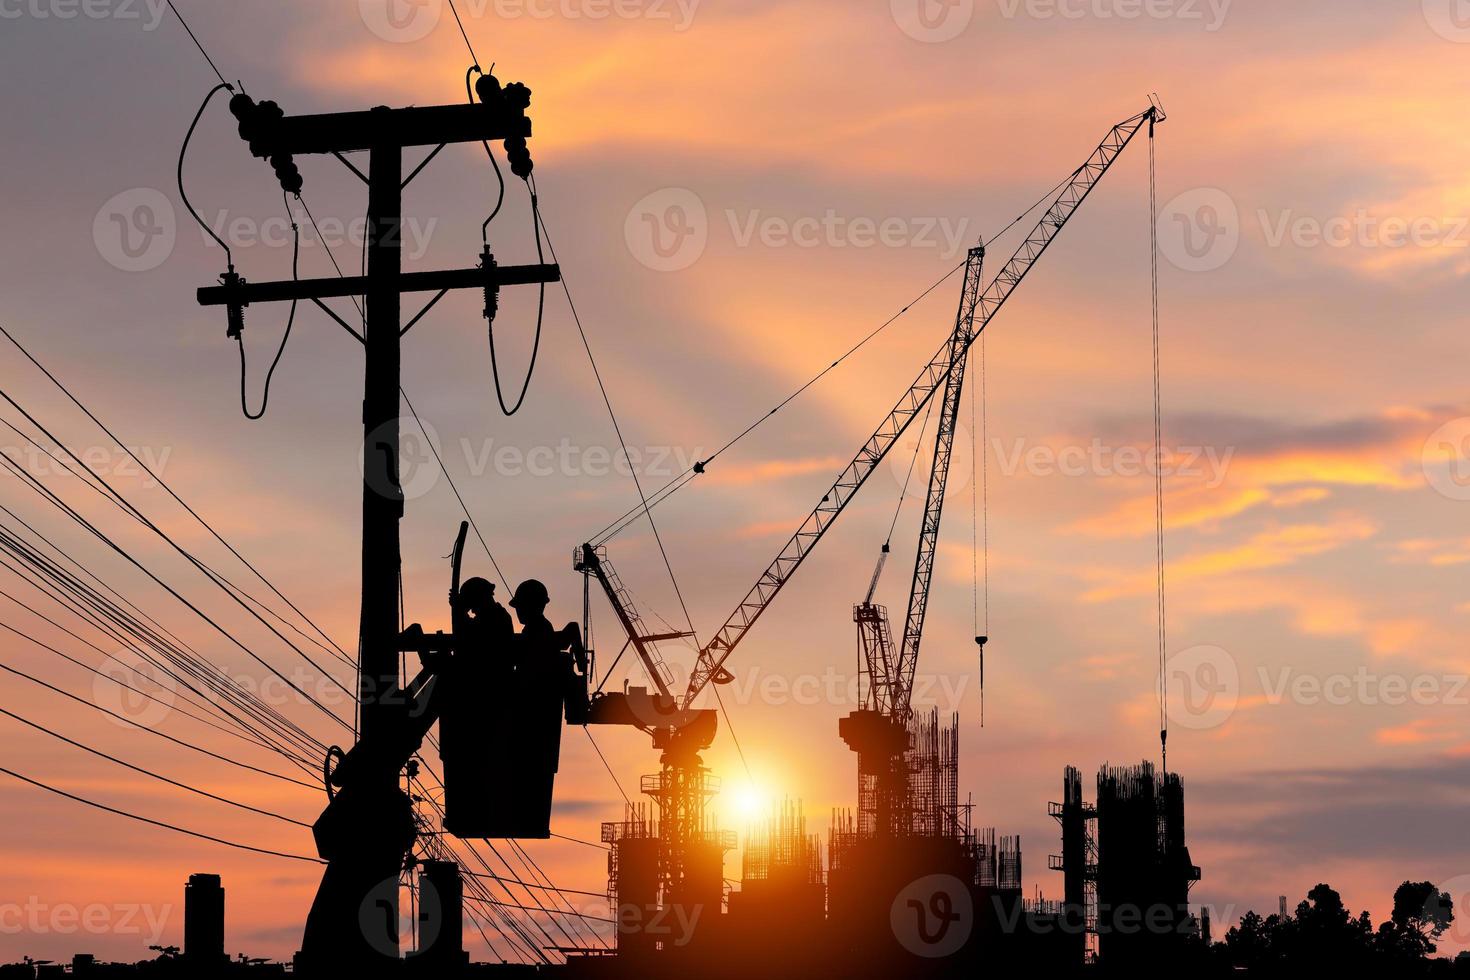 silhouet van elektricien officier klimt een paal en gebruikt een kabelbaan om een hoogspanningslijnsysteem te onderhouden, schaduw van elektricien lijnwachter reparateur werknemer bij klimwerk op elektrische post elektriciteitspaal foto